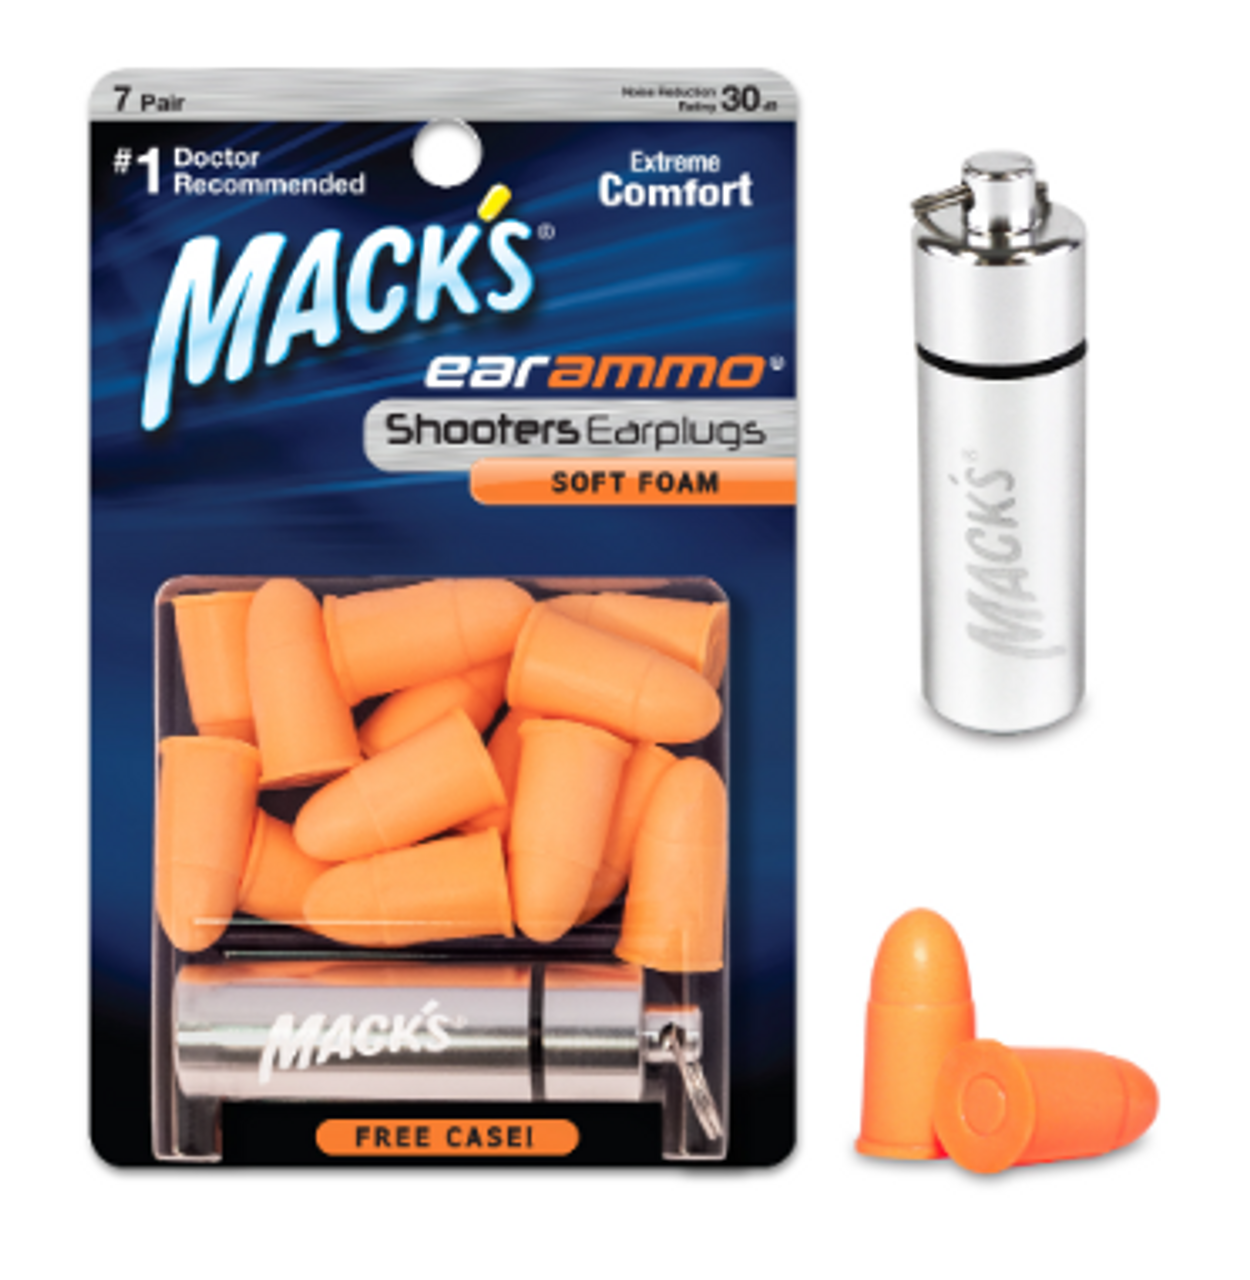 Mack's Shooting Ear Ammo, Soft Foam Ear Plugs